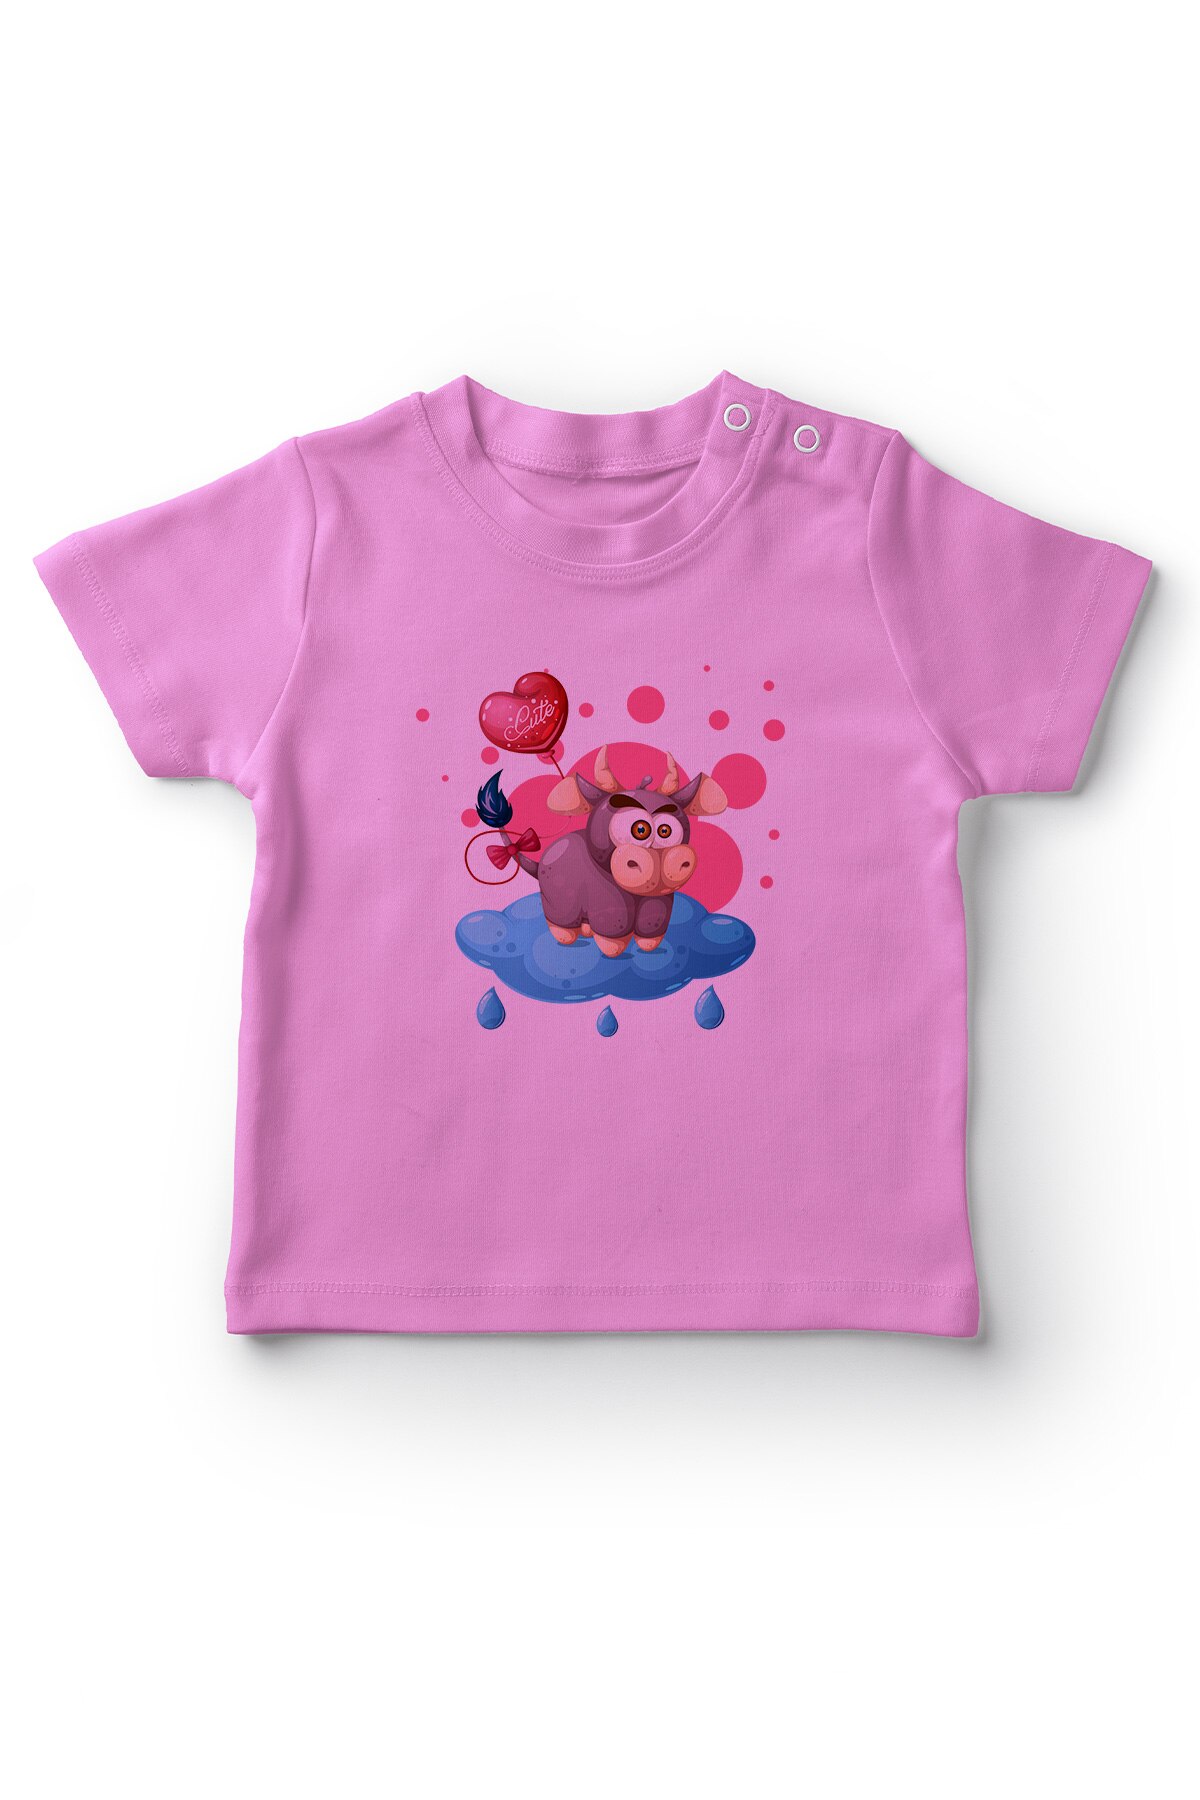 Angemiel Baby Wolken Op Zoete Koe Meisje Baby T-shirt Roze